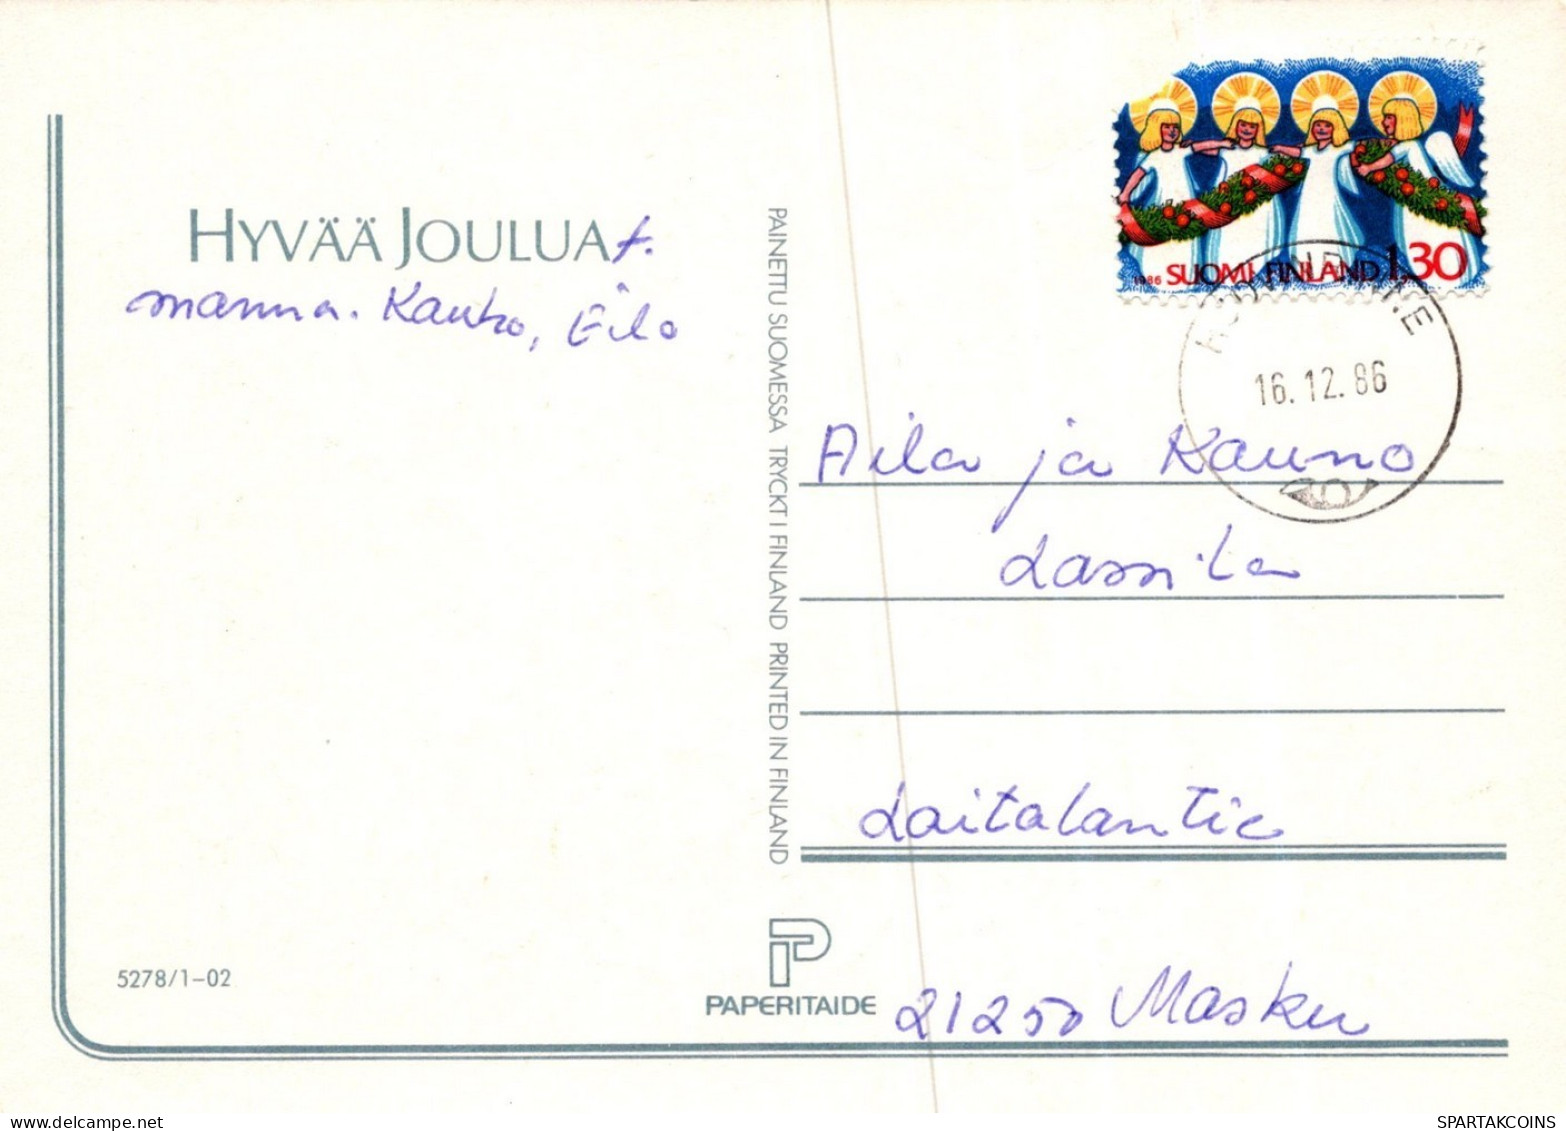 PÈRE NOËL Animaux NOËL Fêtes Voeux Vintage Carte Postale CPSM #PAK643.FR - Santa Claus